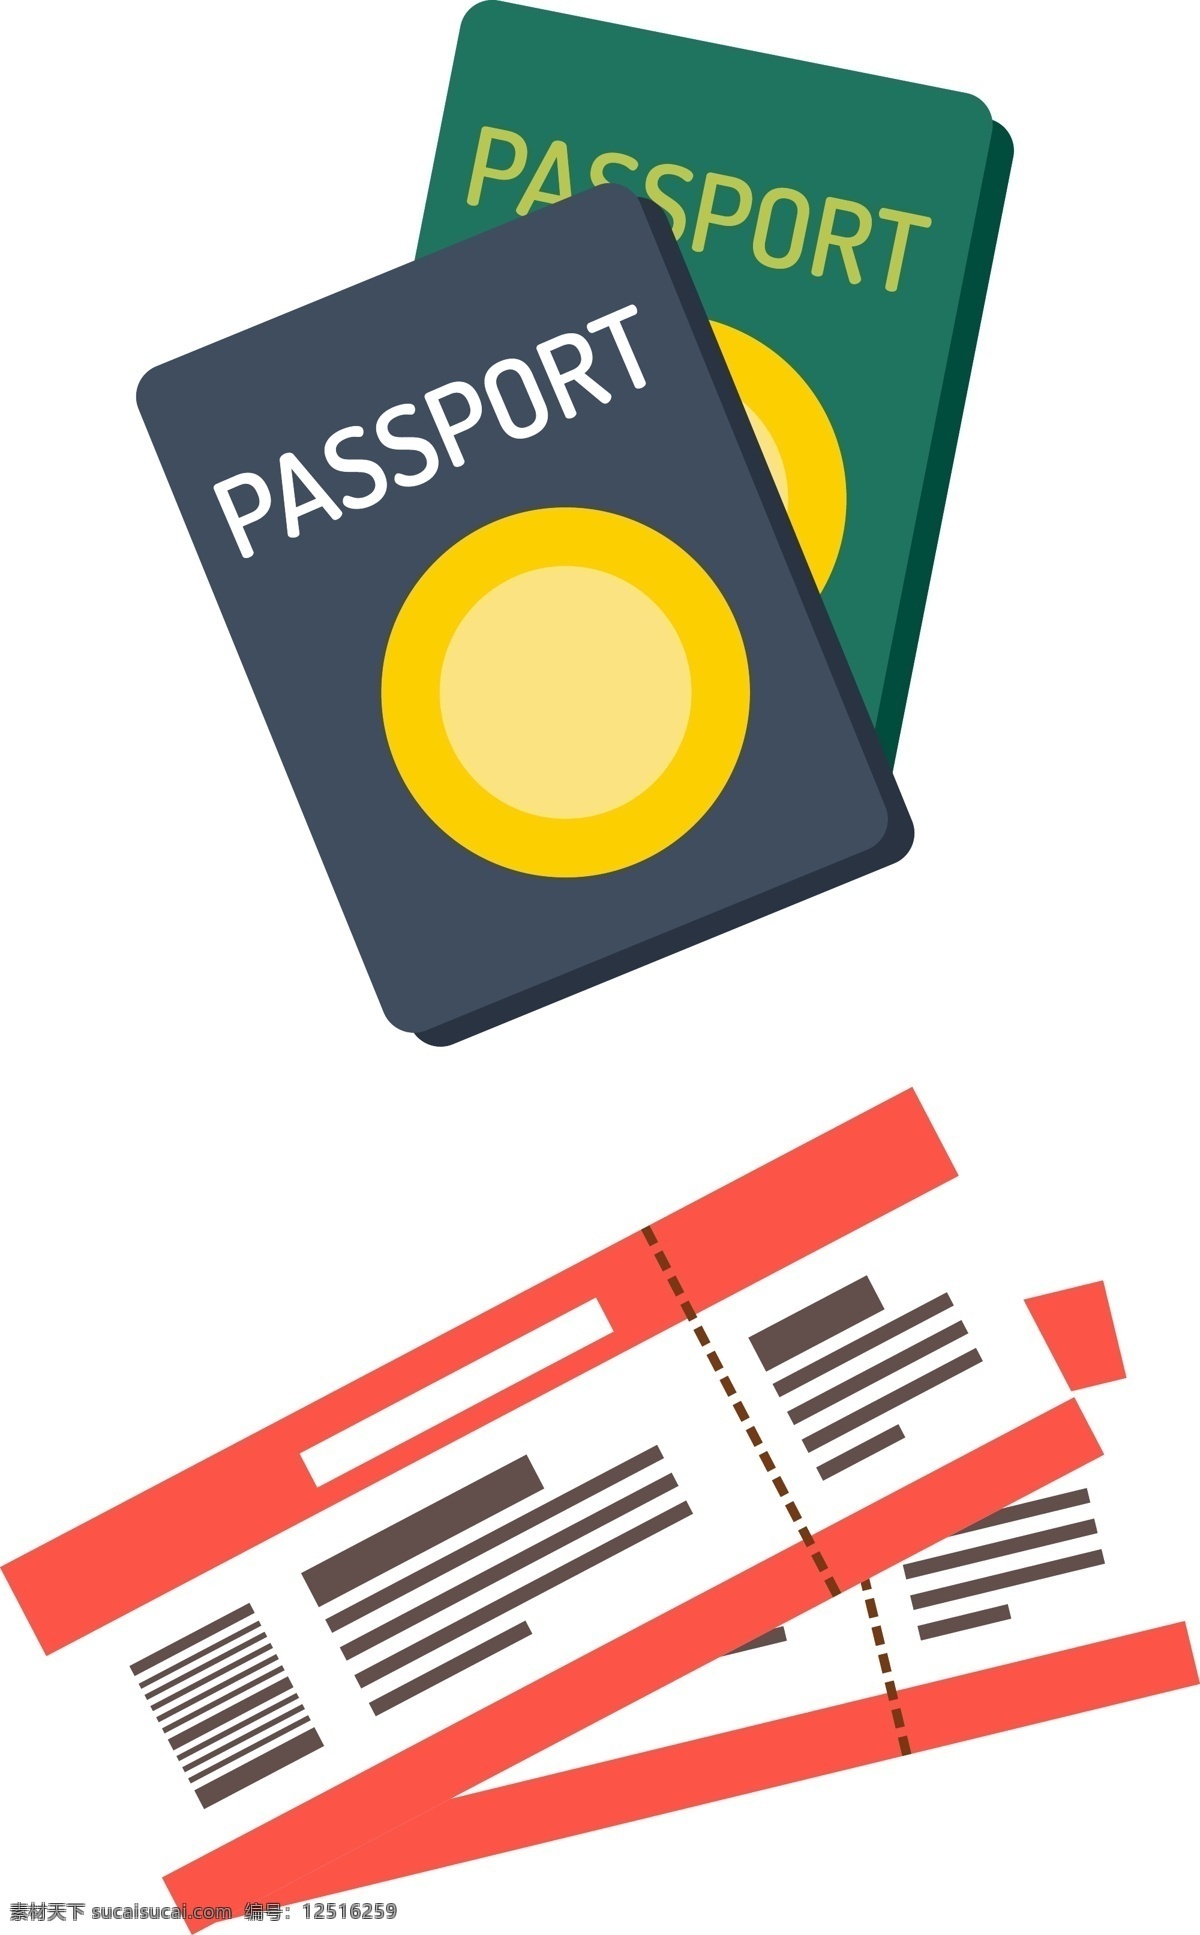 卡通 矢量 机票 护照 卡通矢量 证件 环游 世界 旅行 旅游 飞机 国外旅游 环球旅游 出国旅游 度假 旅游去哪里